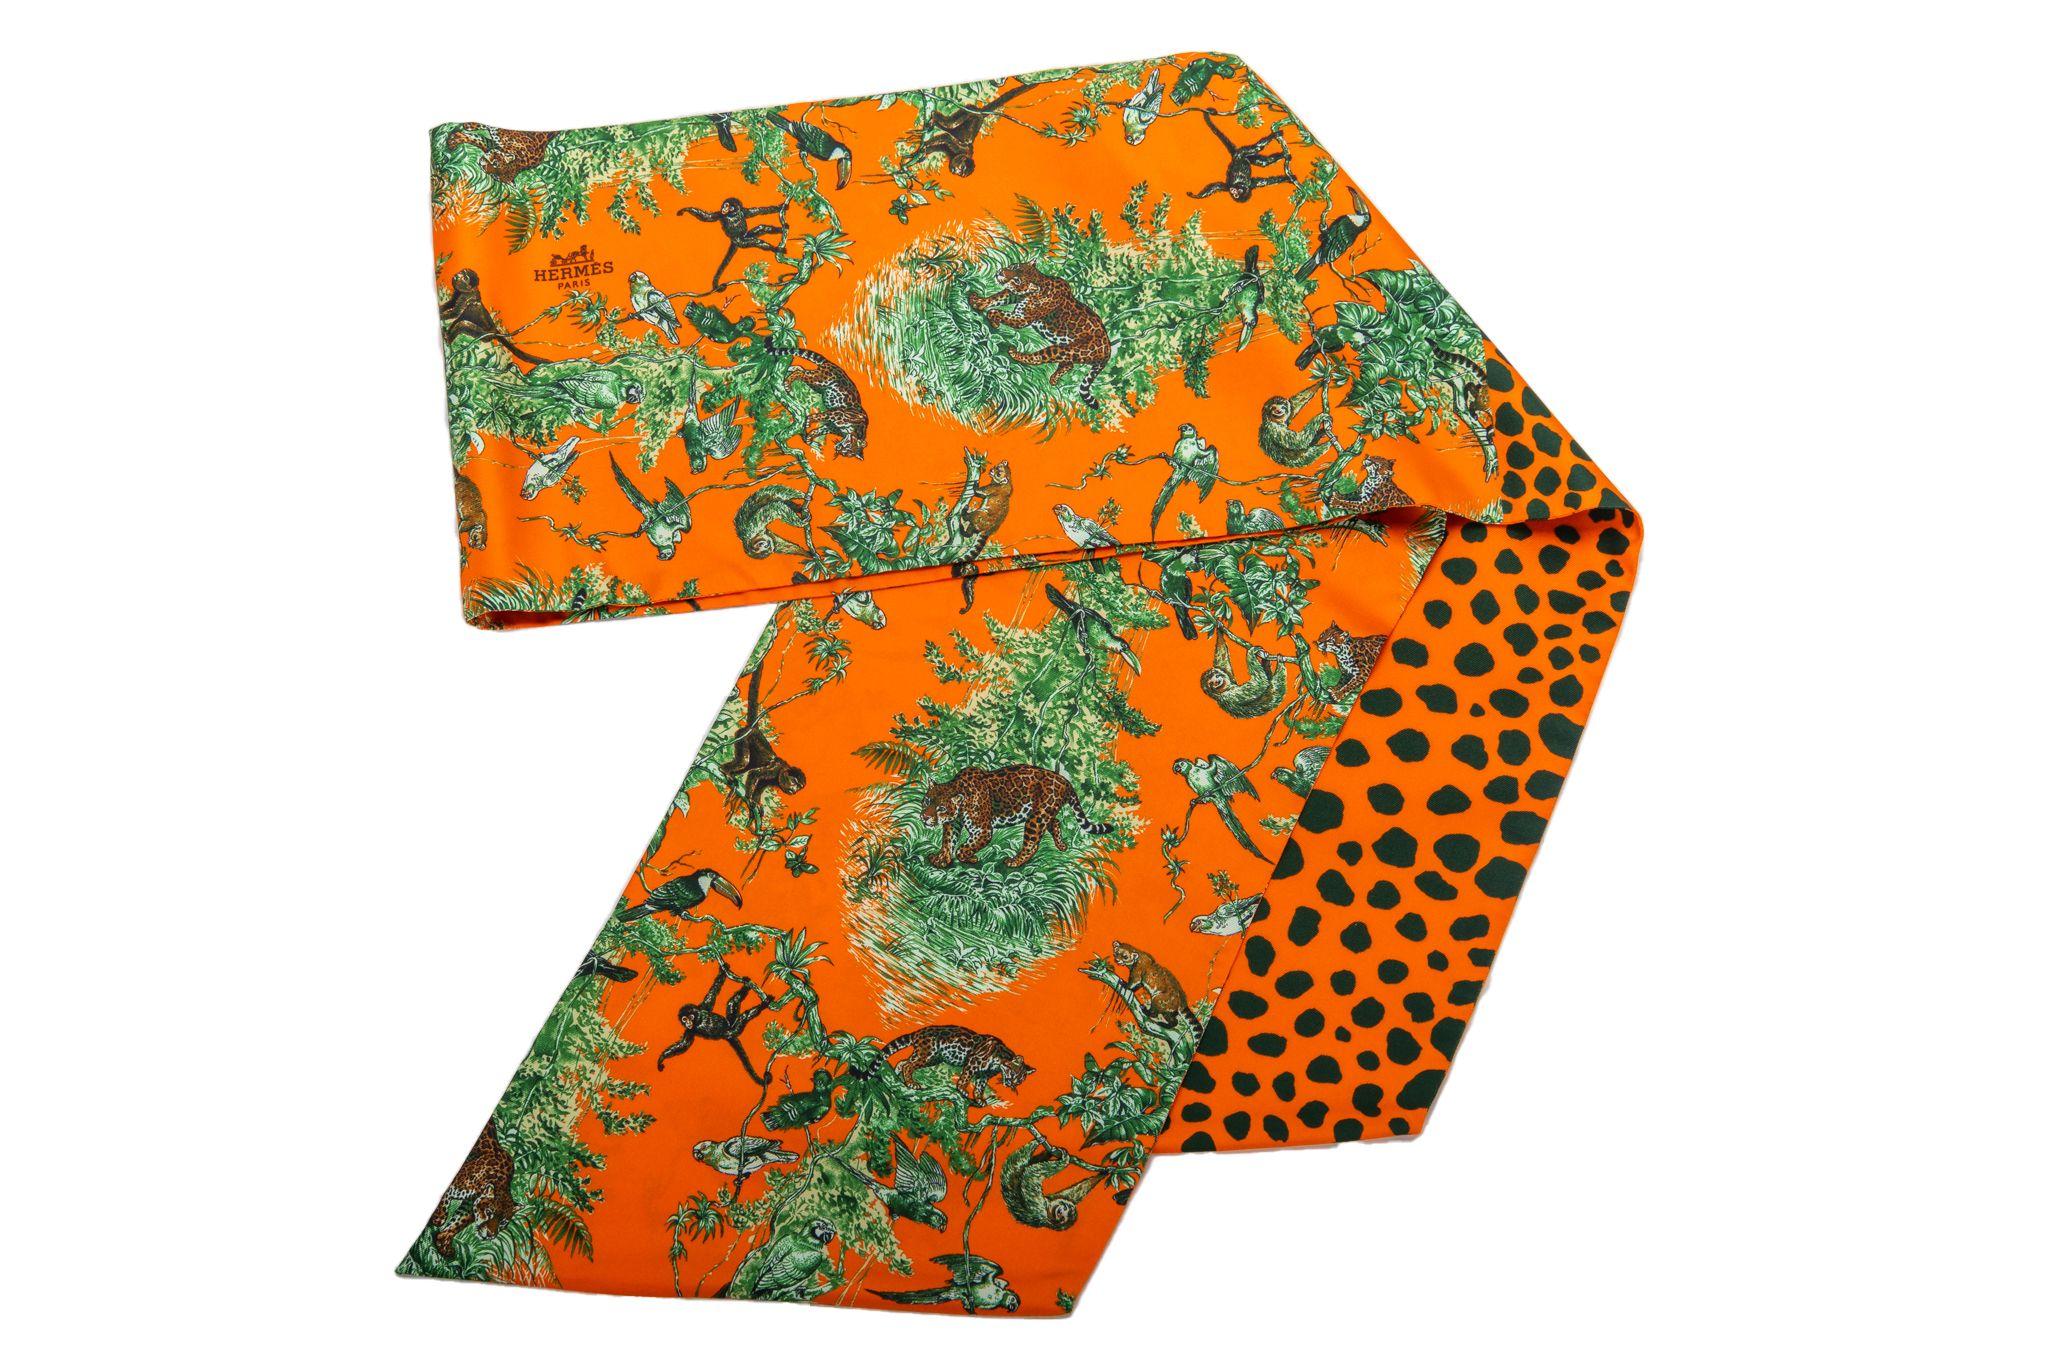 Hermès Equateur Foulard maxi twilly orange avec détail floral plumes. Bords roulés à la main. Taille abandonnée. Nouveau dans la boîte.
